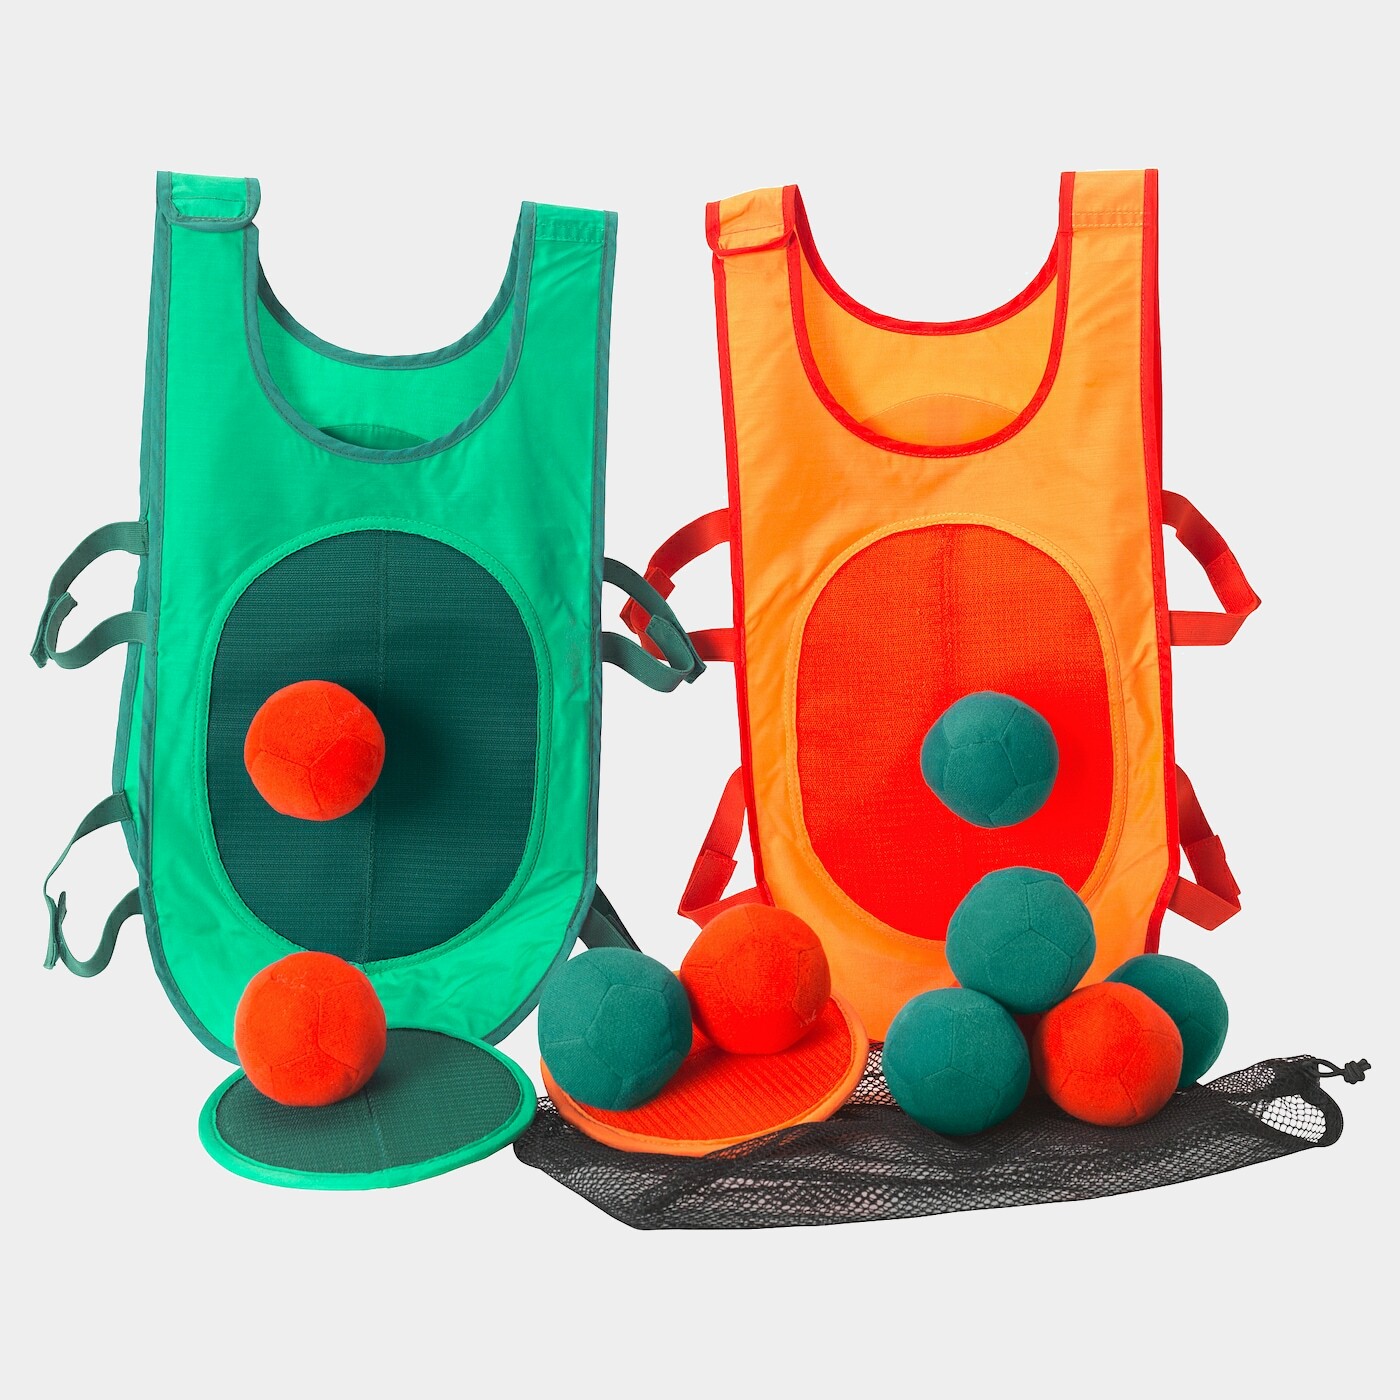 LUSTIGT Ballwurfspiel  - Spielzeug - Babyausstattung & Kinderzimmerzubehör Ideen für dein Zuhause von Home Trends. Babyausstattung & Kinderzimmerzubehör Trends von Social Media Influencer für dein Skandi Zuhause.